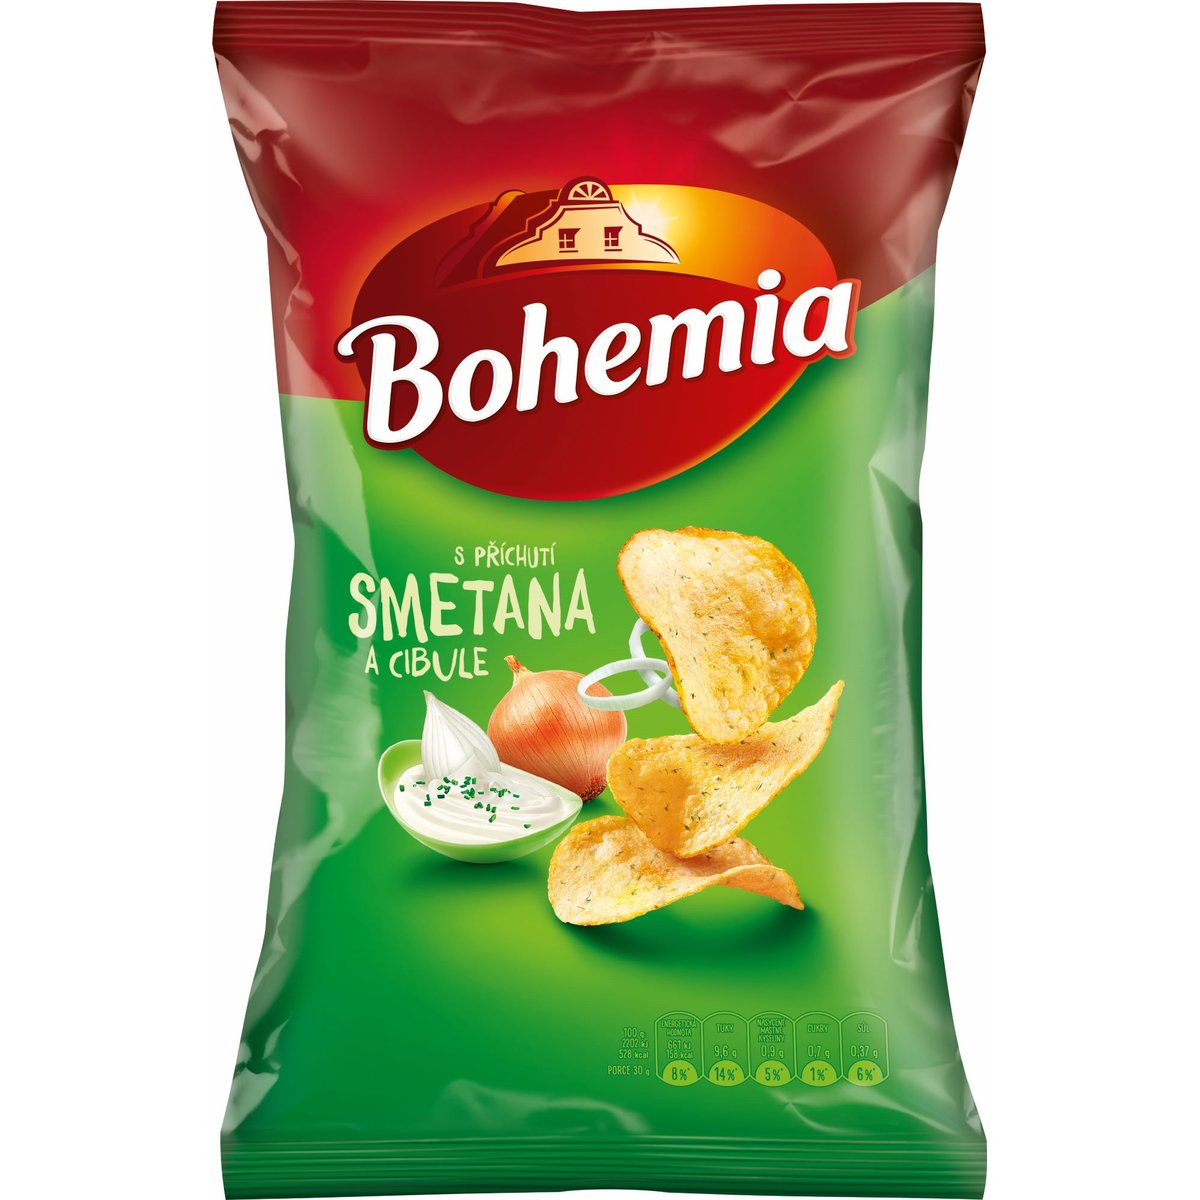 Bohemia Smetana a cibule